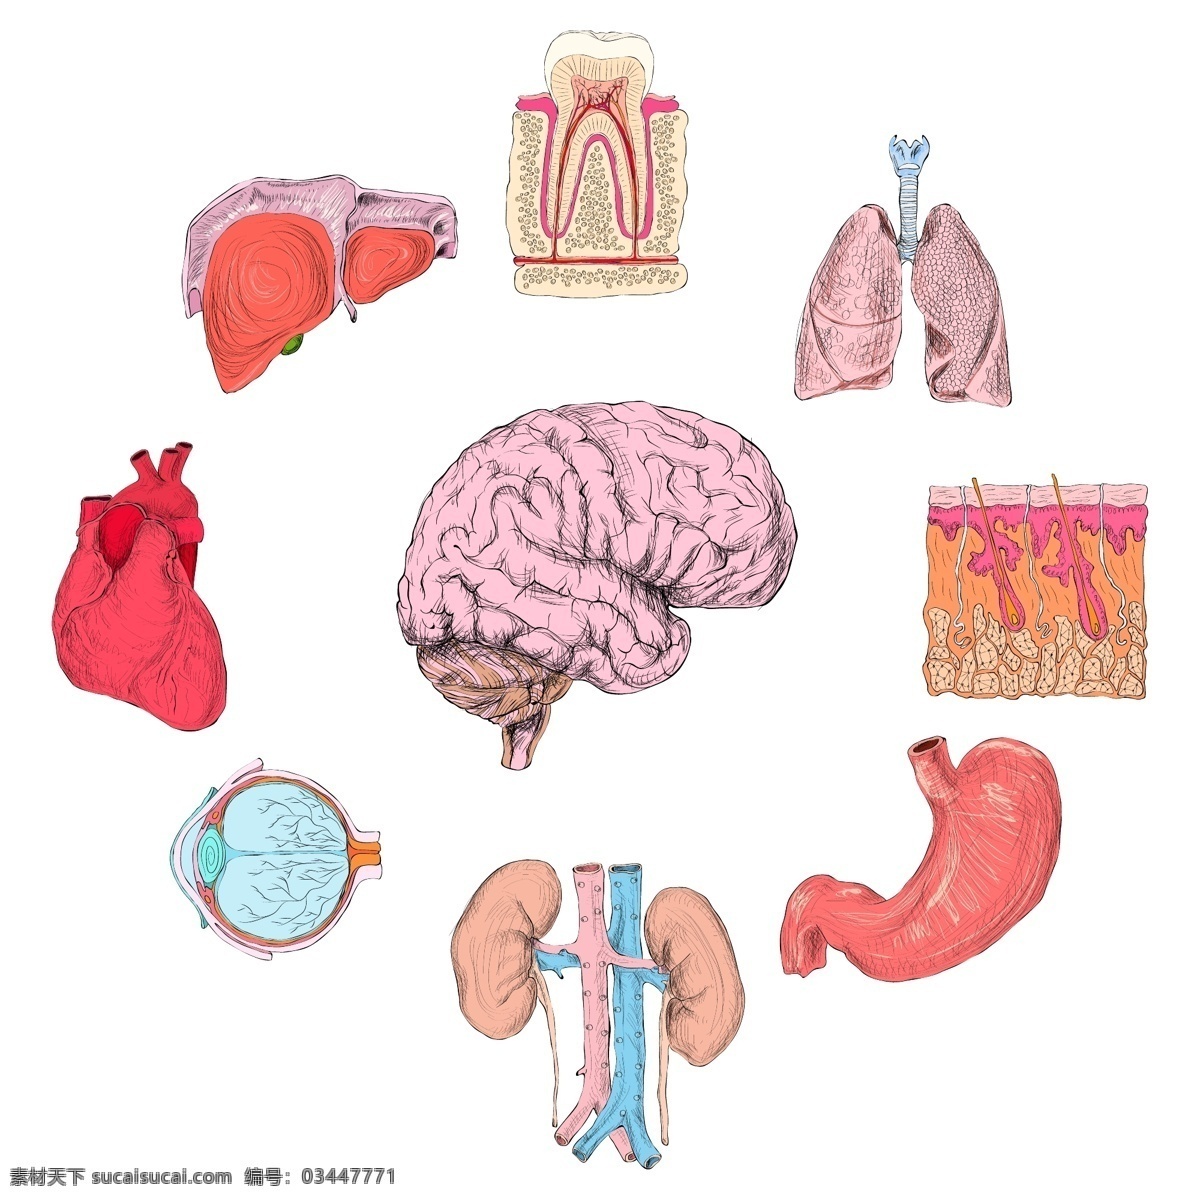 人体器官组 心脏 脑 科学 颜色 人 医学 牙齿 人体 生物 解剖学 肾 肺 集 肝 器官 肠 眼球